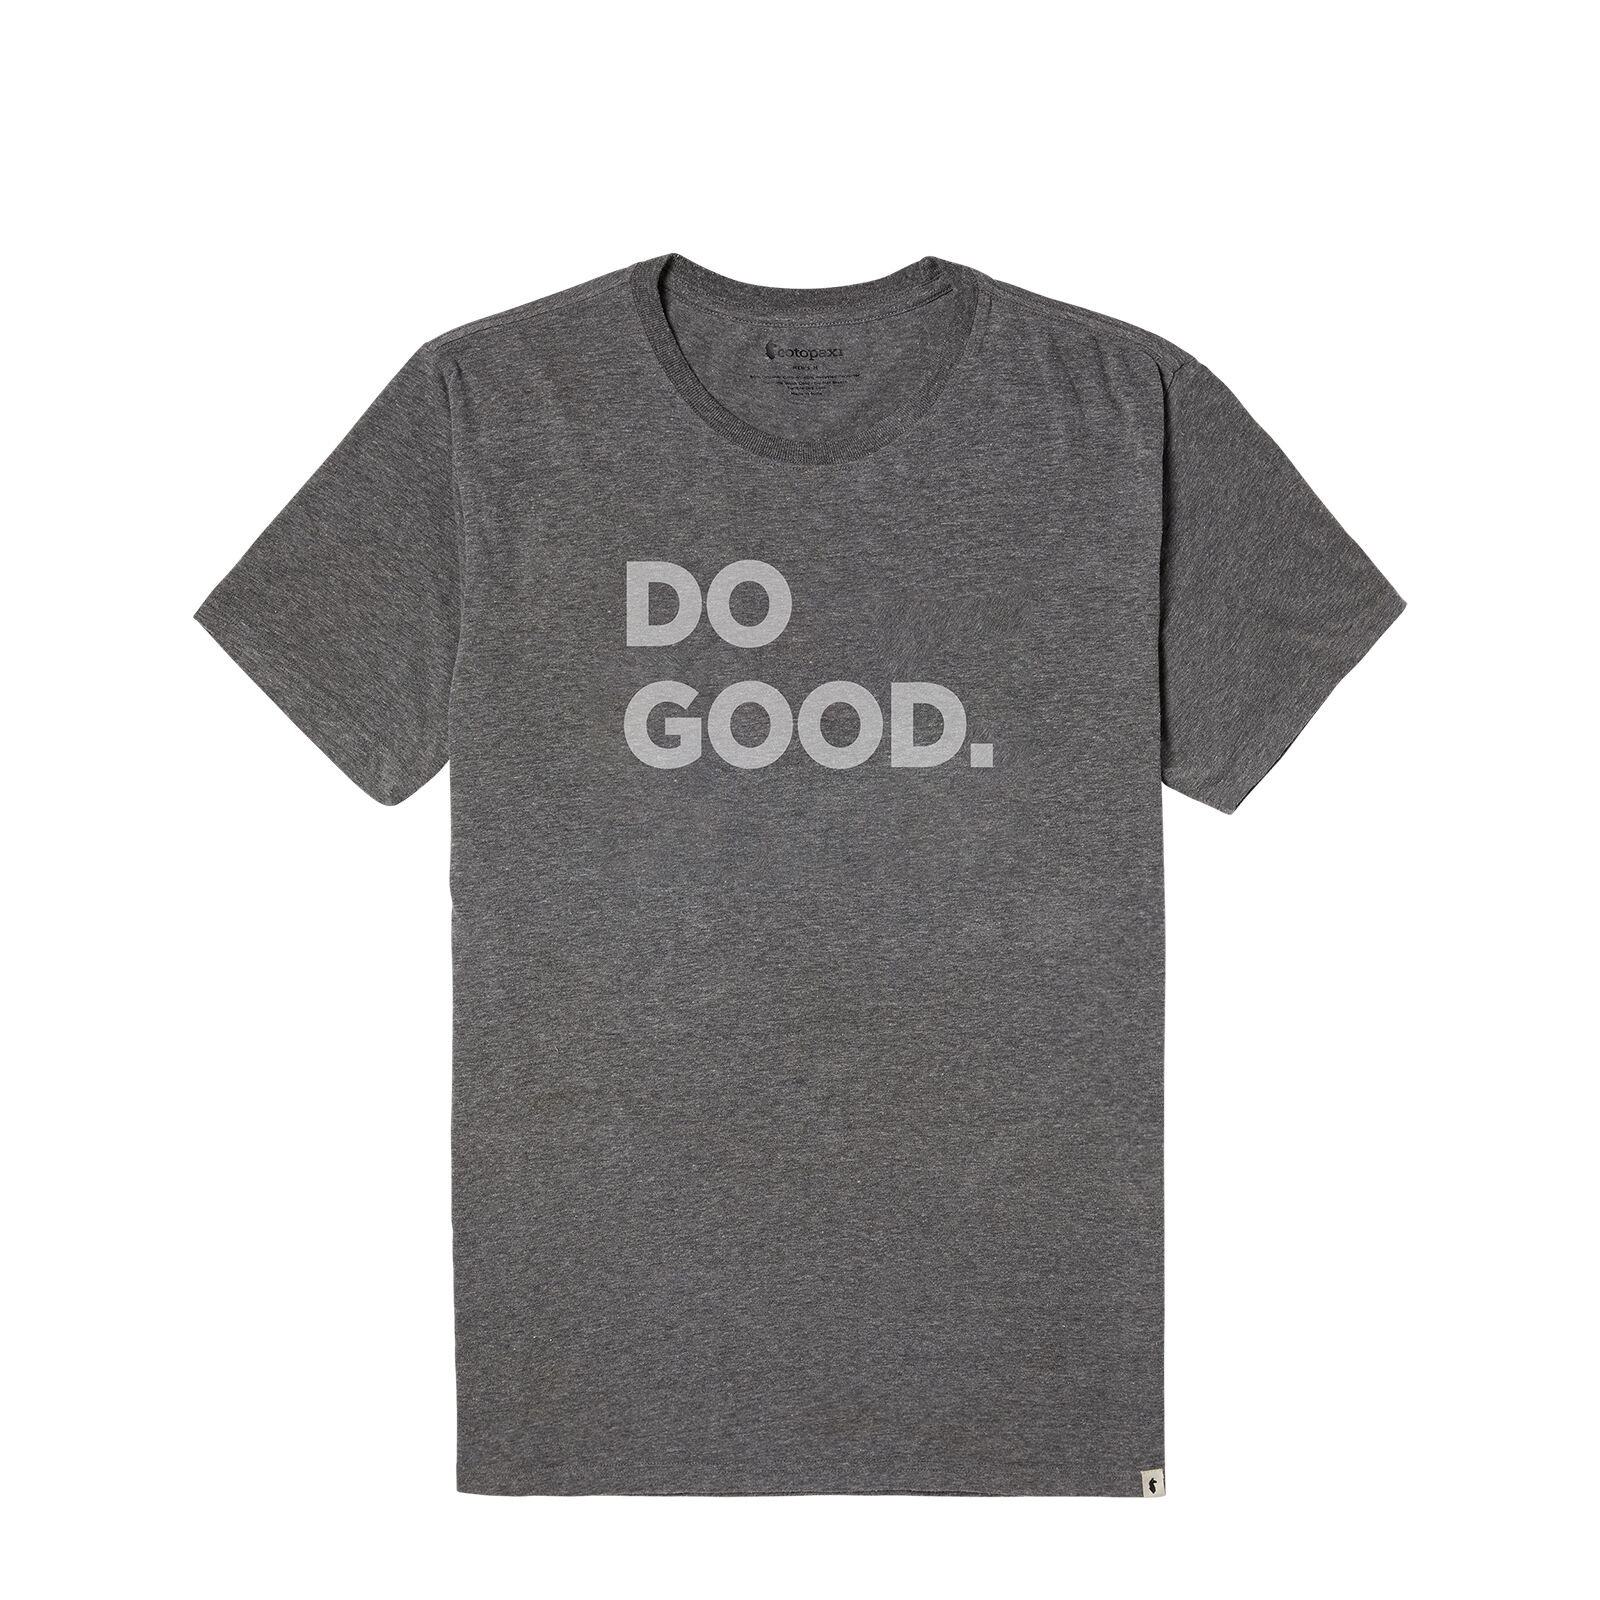 Cotopaxi Do Good - Camiseta - Hombre